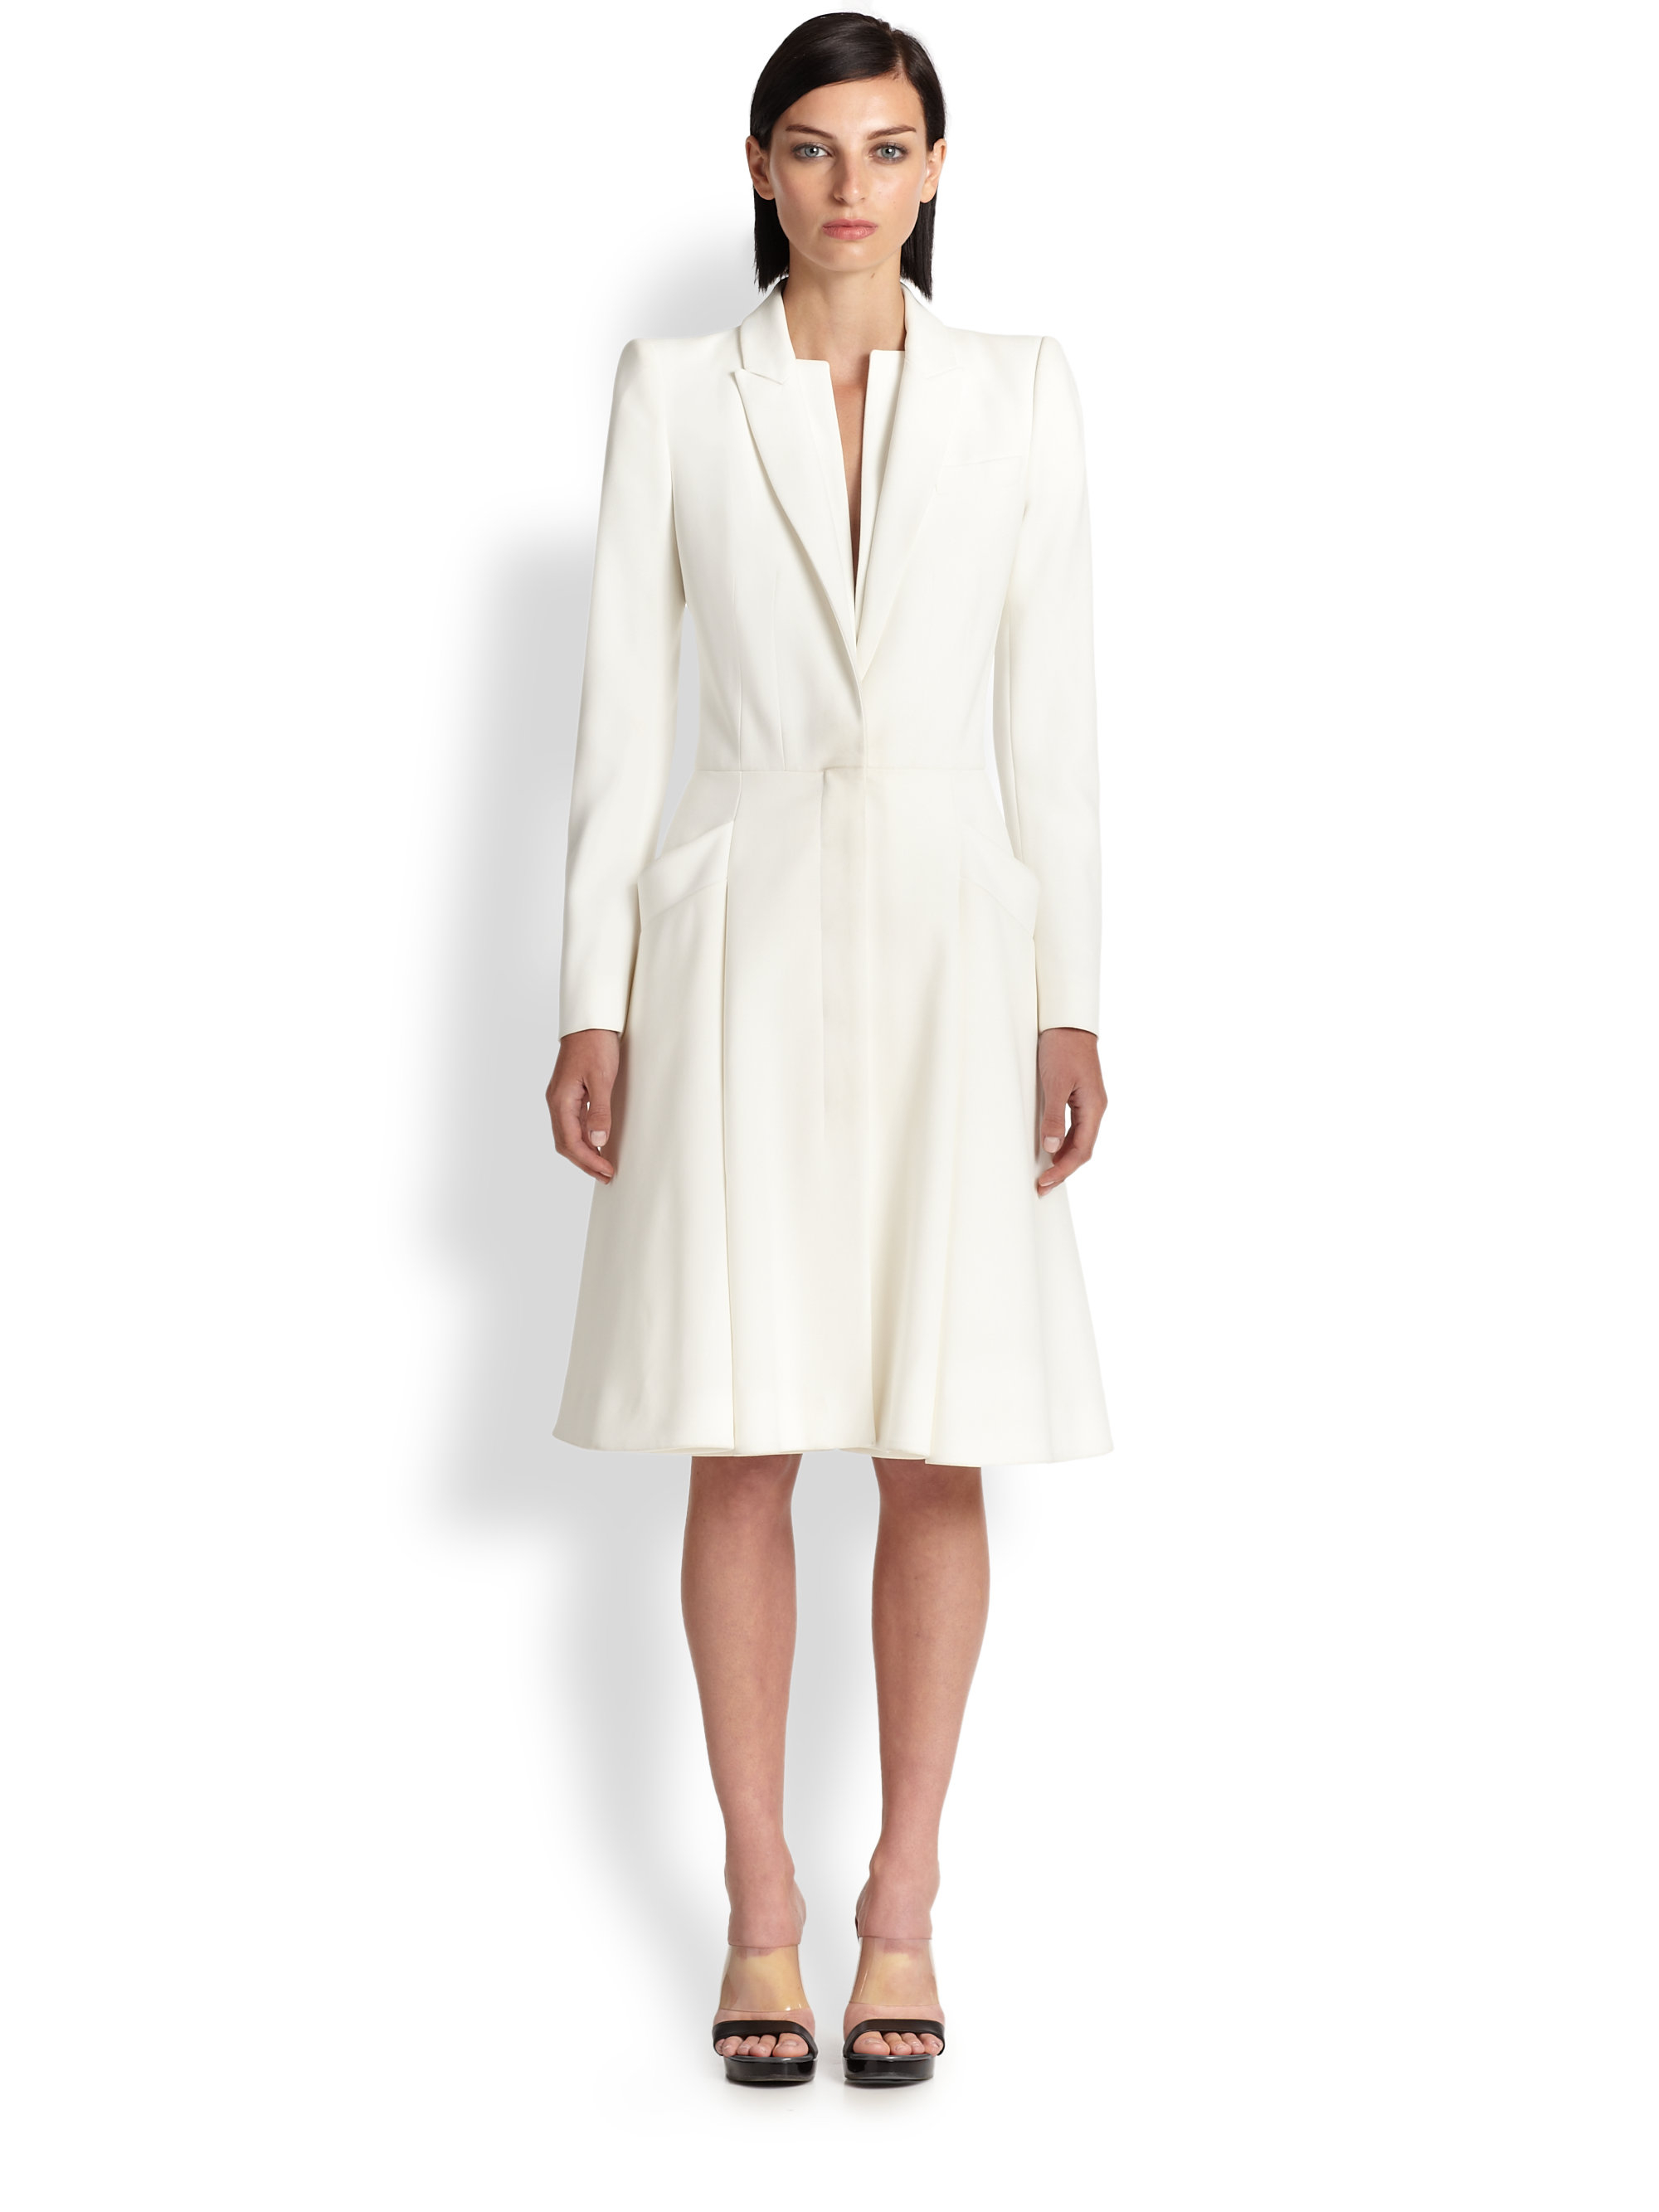 Lyst - Alexander Mcqueen Crepe Coat Dress in White